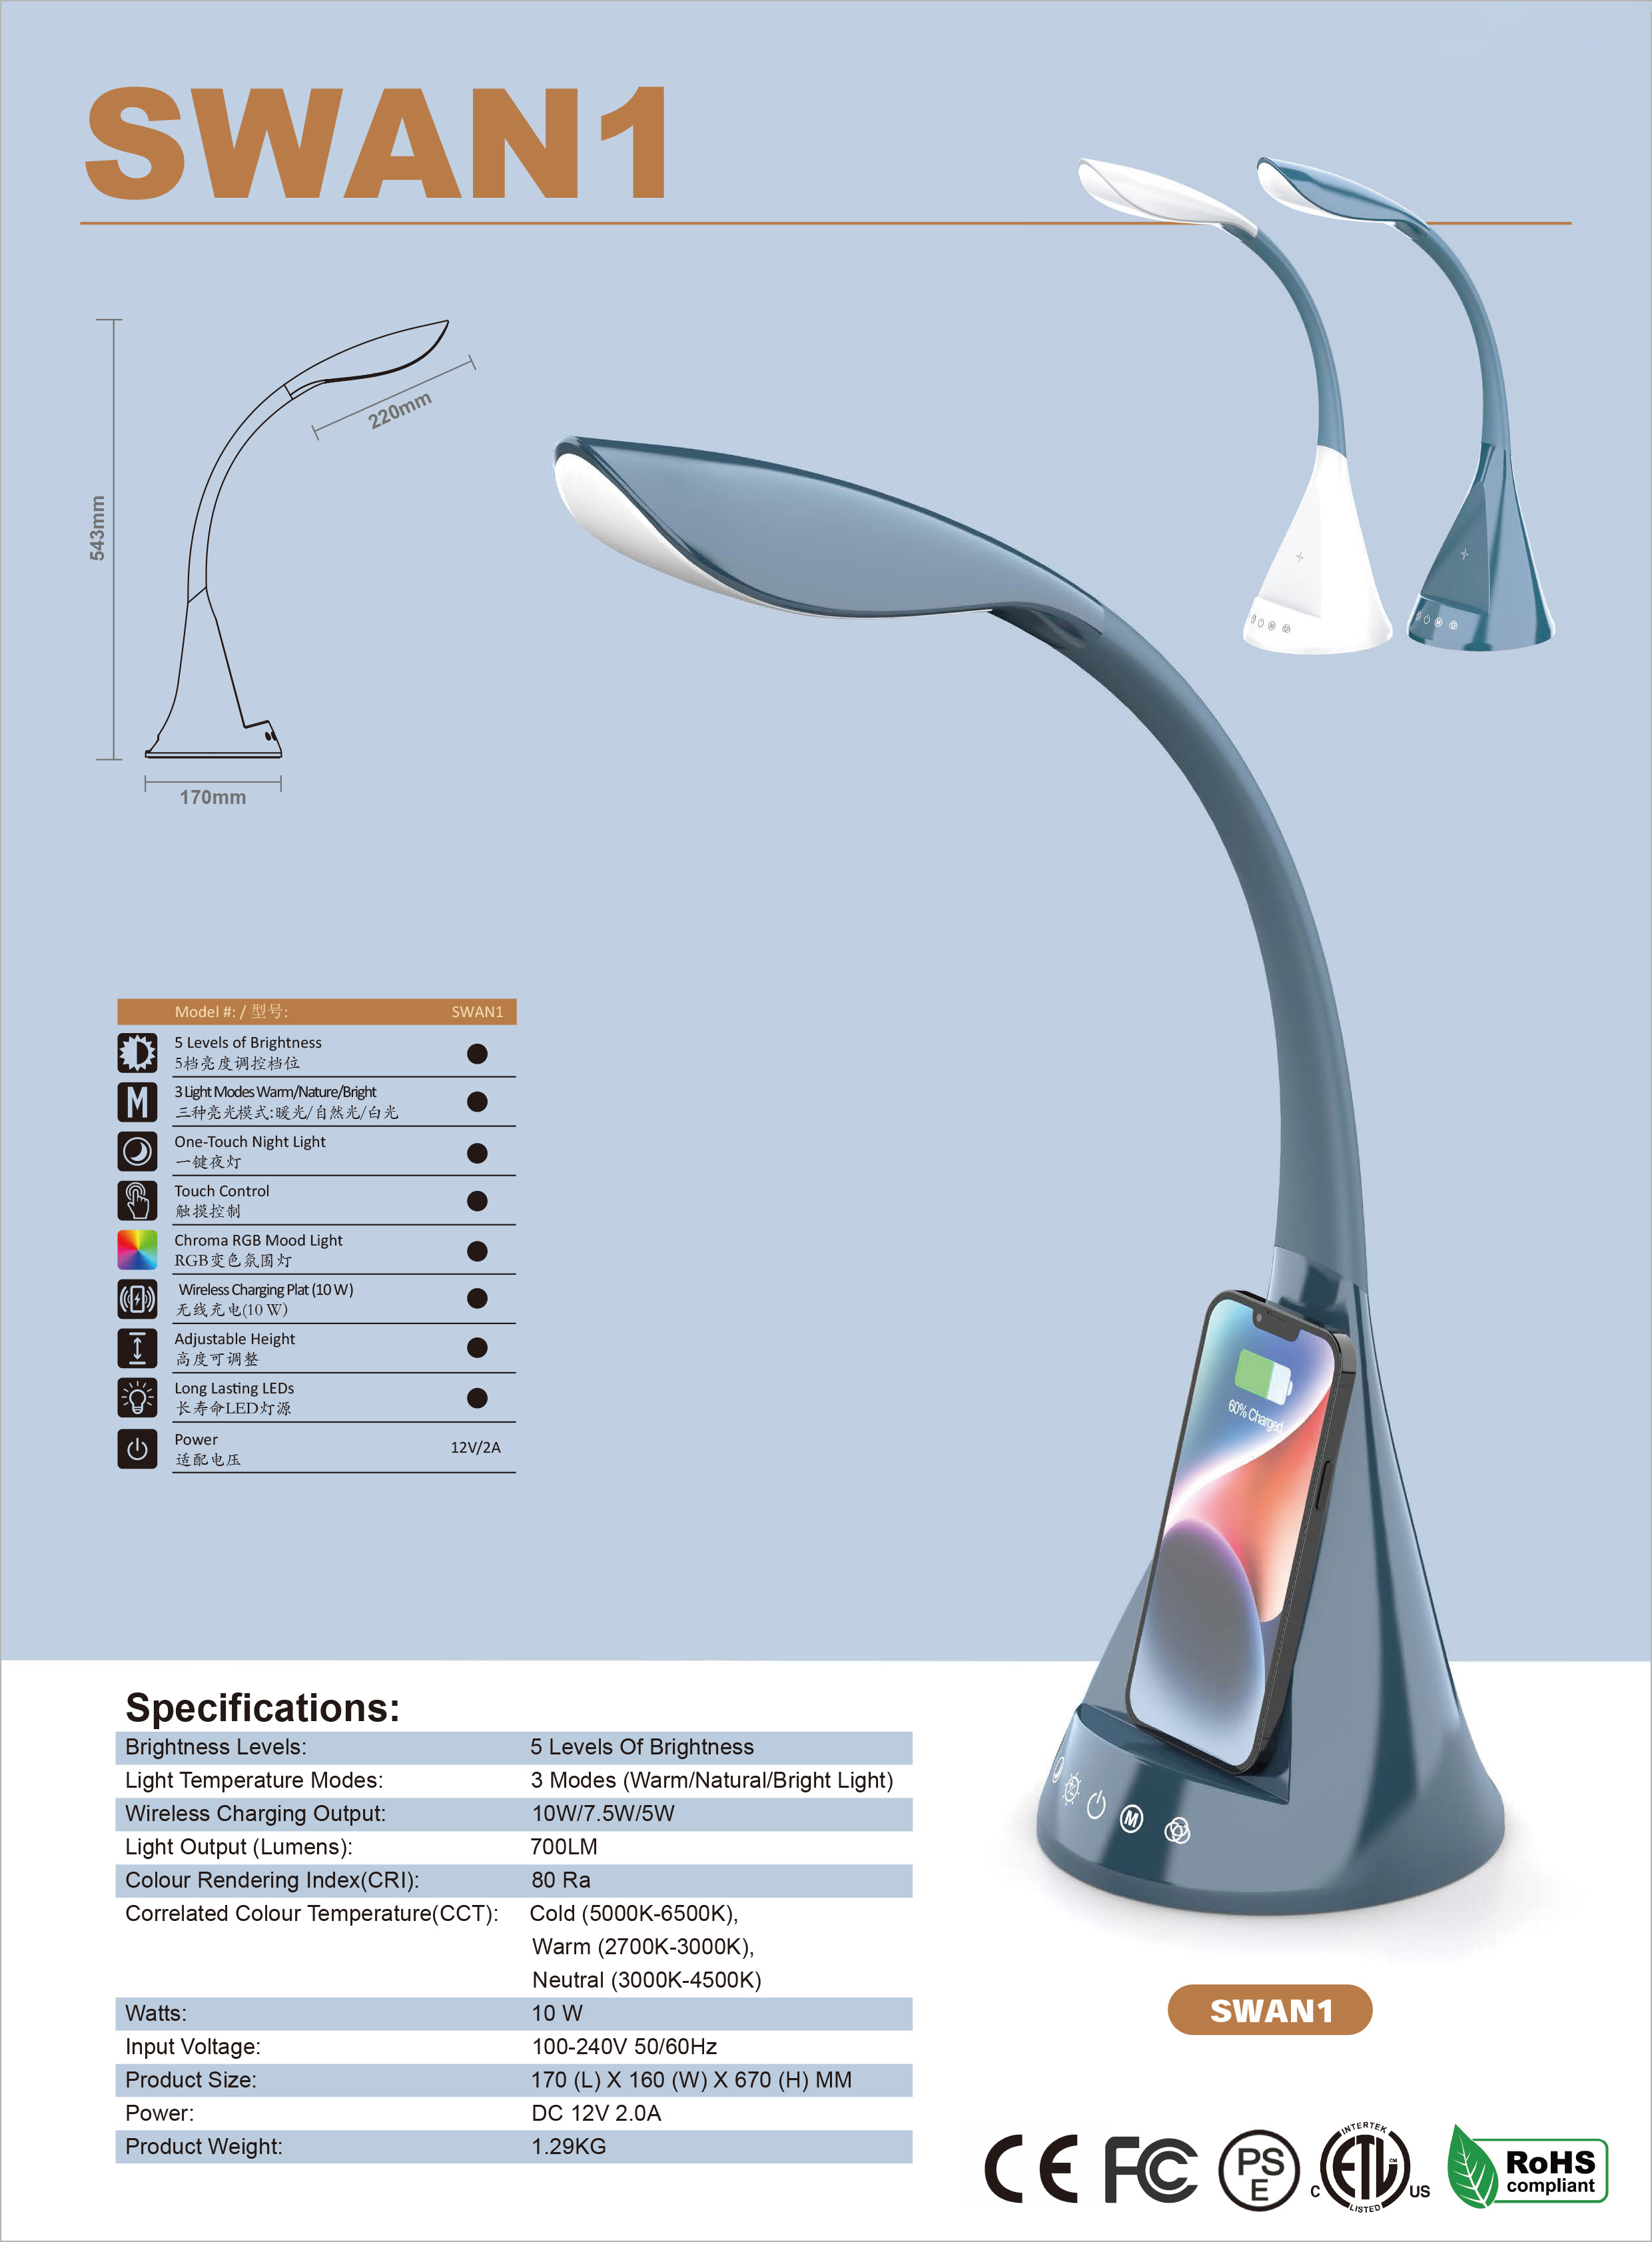 Everbrilliant SWAN1 Desk Lamp Spec Sheet.jpg